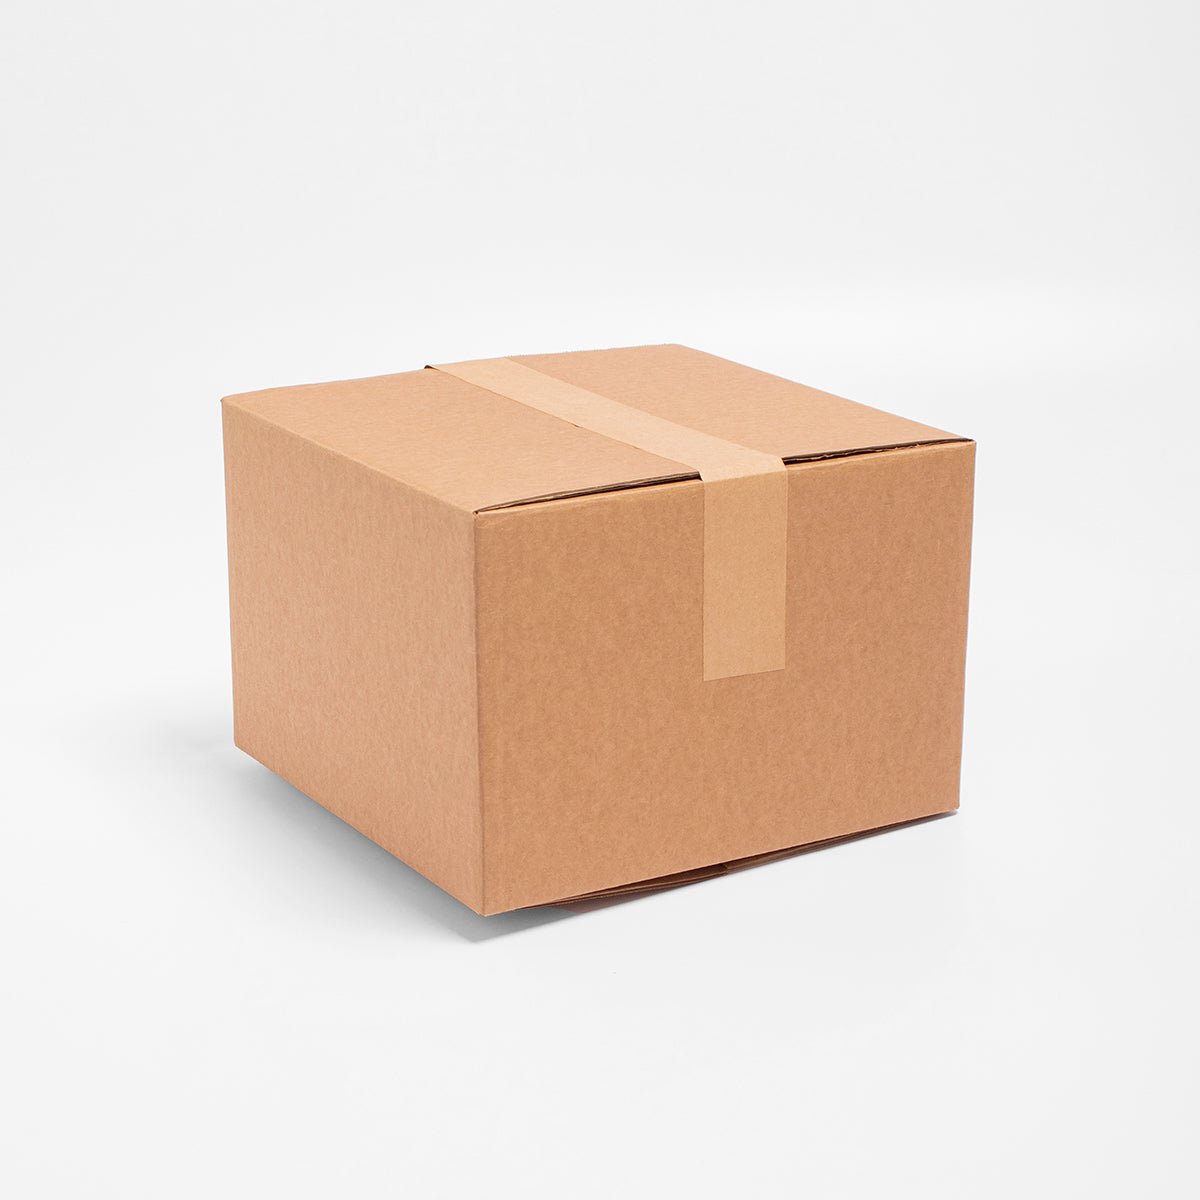 Caja de Cartón - 20 x 20 x 15 cm - Cuadrada - Skyboxes México